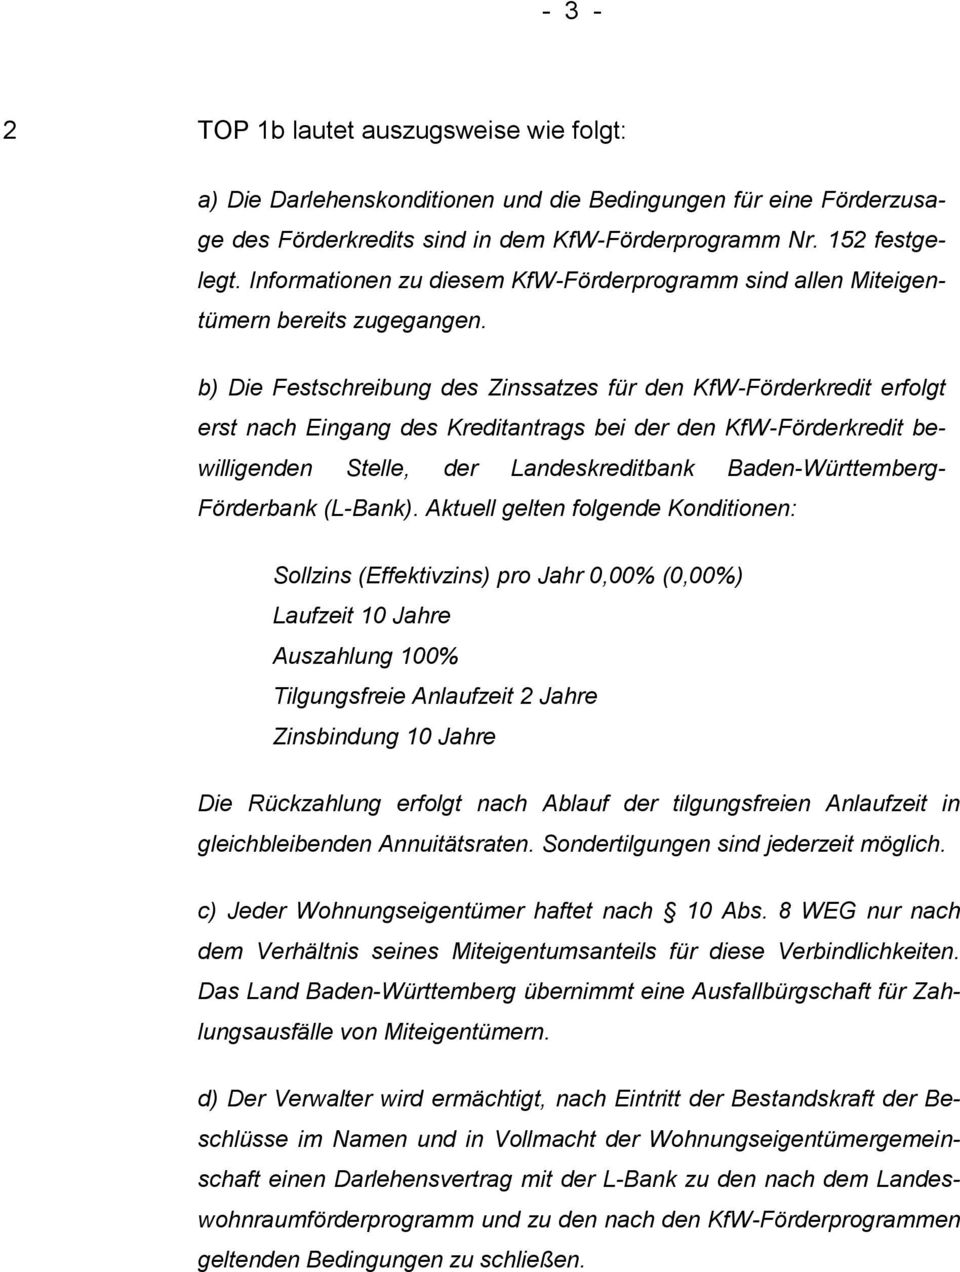 b) Die Festschreibung des Zinssatzes für den KfW-Förderkredit erfolgt erst nach Eingang des Kreditantrags bei der den KfW-Förderkredit bewilligenden Stelle, der Landeskreditbank Baden-Württemberg-